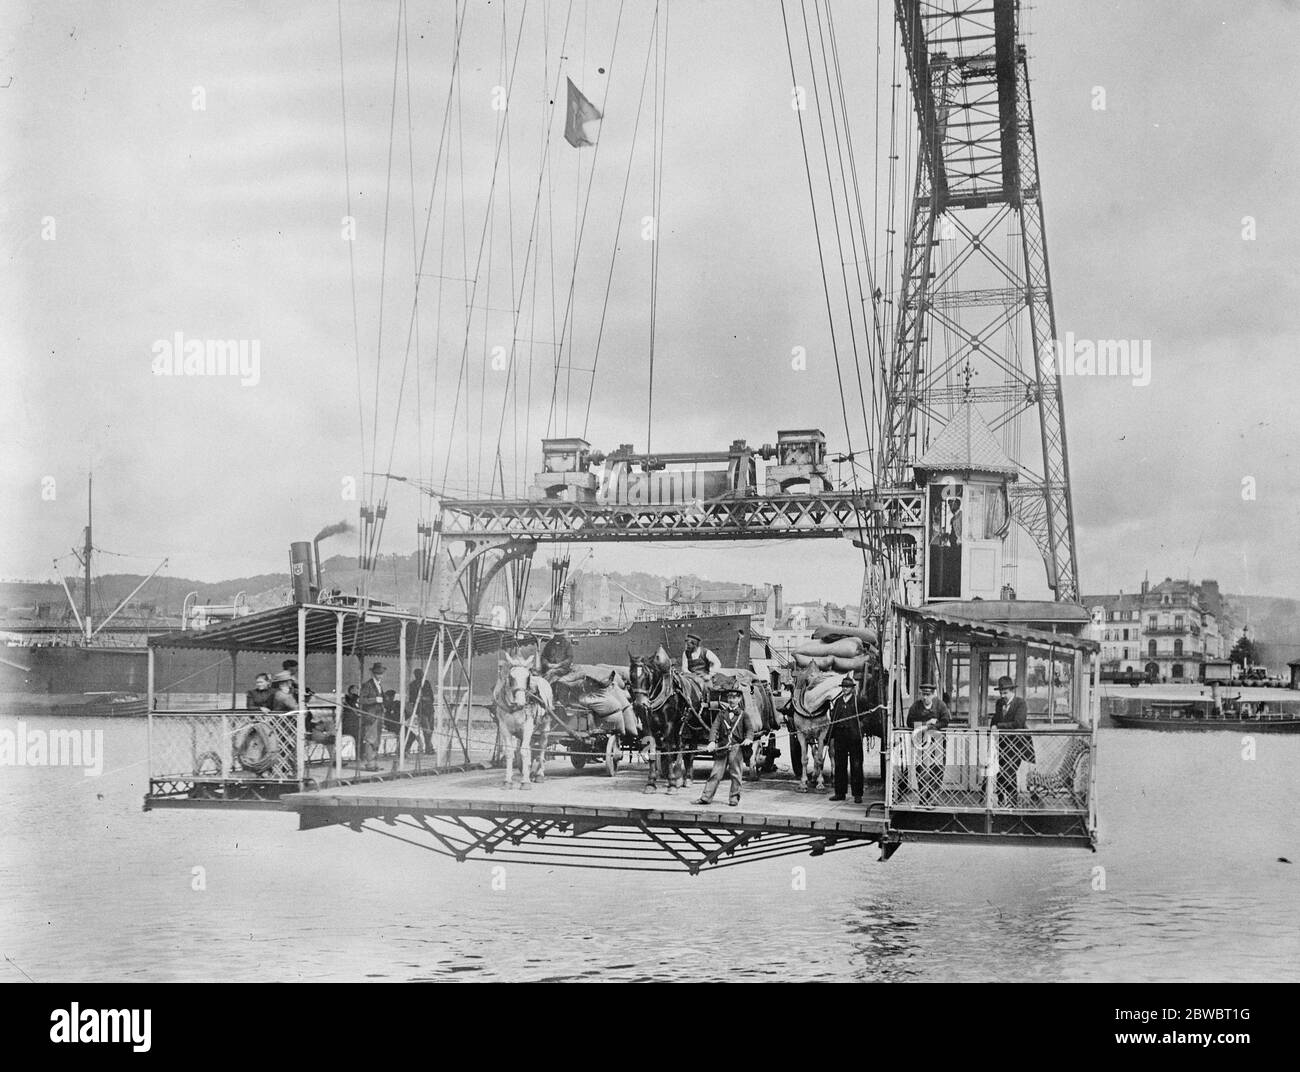 El puente más útil de Rouen . Una imagen interesante del gran Transbordeur a través del Sena. La imagen muestra pasajeros y tráfico vehicular a punto de llegar en la margen izquierda. 21 de enero de 1925 Foto de stock